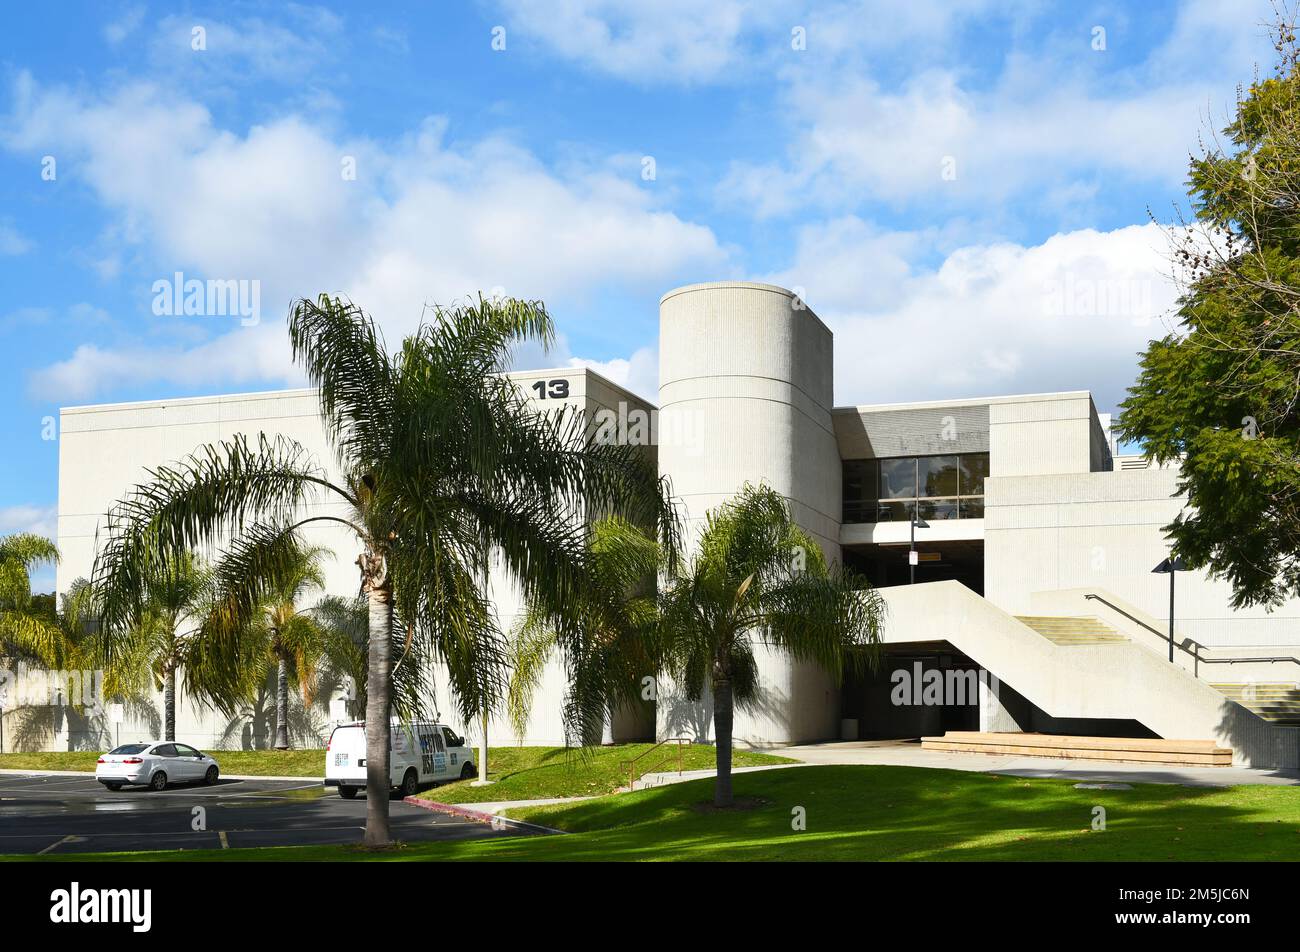 CYPRESS, KALIFORNIEN - 28. DEZ. 2022: Das Gebäude für technische Ausbildung und Gesundheitswissenschaften auf dem Campus des Cypress College. Stockfoto